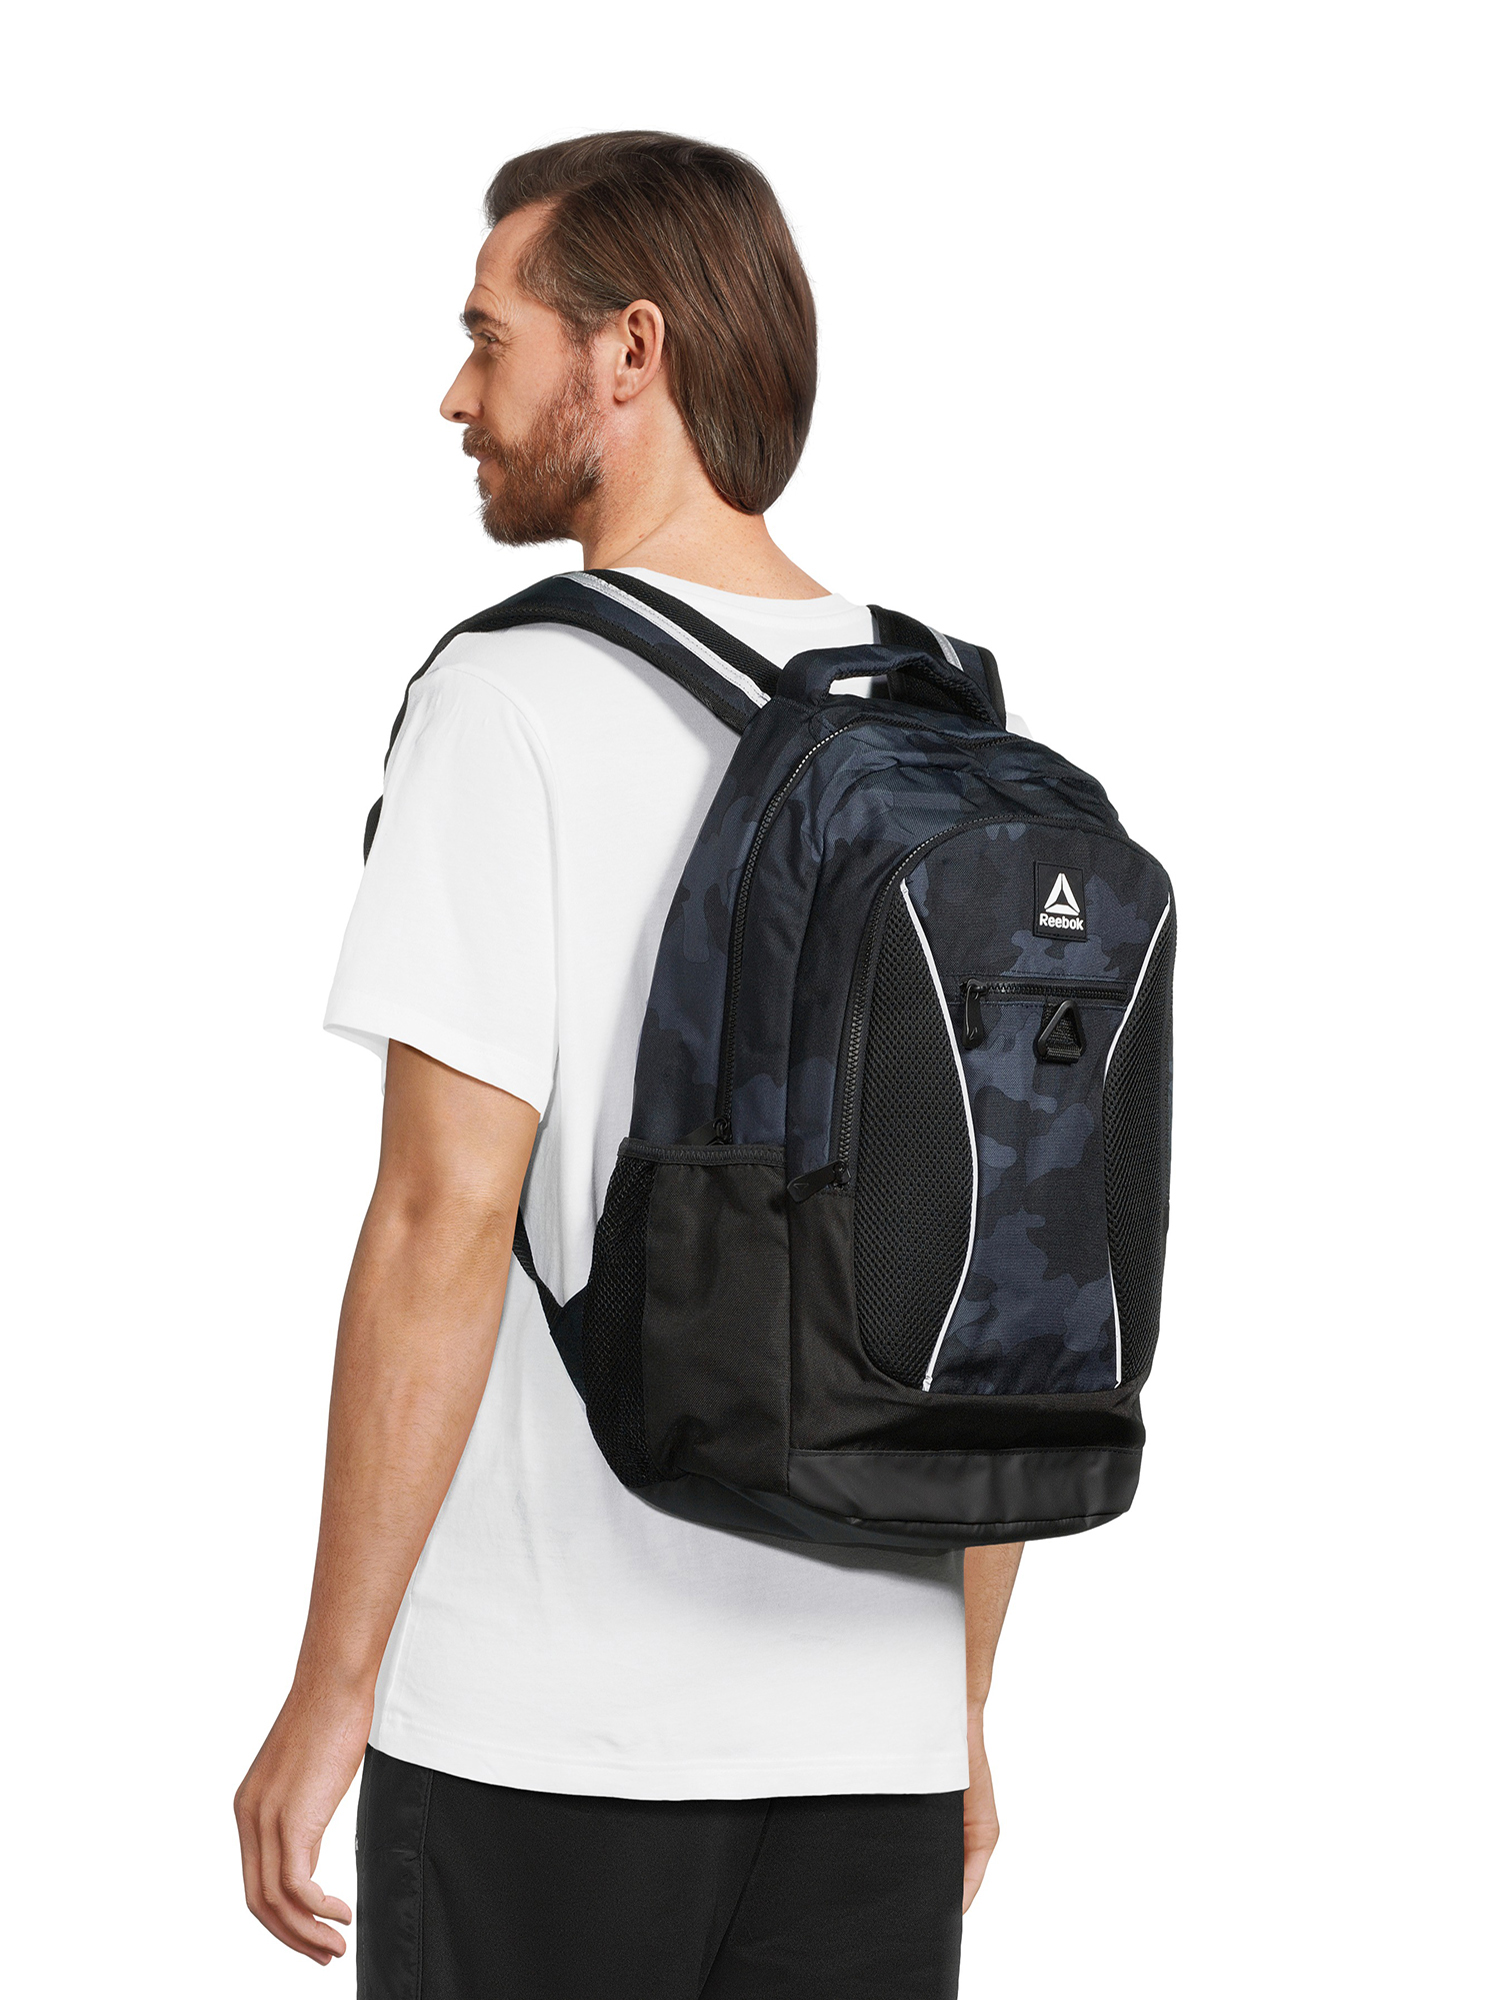 Reebok Unisex Adult Laredo 19.5" Laptop Backpack, Black Camo - image 3 of 5